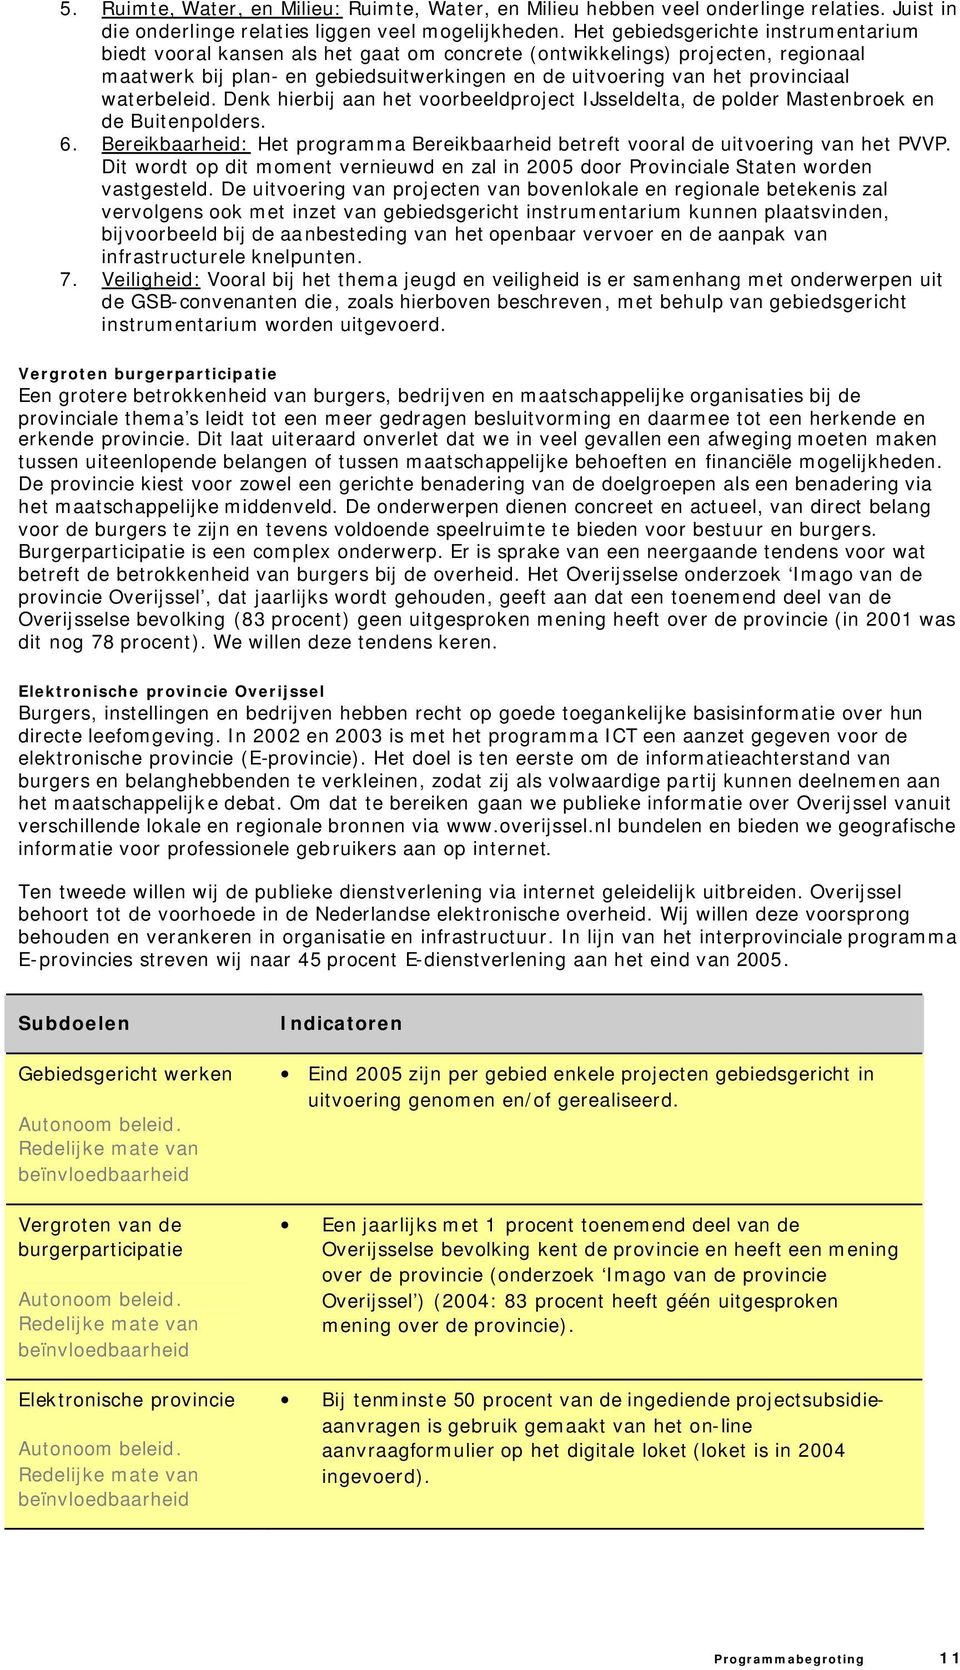 waterbeleid. Denk hierbij aan het voorbeeldproject IJsseldelta, de polder Mastenbroek en de Buitenpolders. 6. Bereikbaarheid: Het programma Bereikbaarheid betreft vooral de uitvoering van het PVVP.